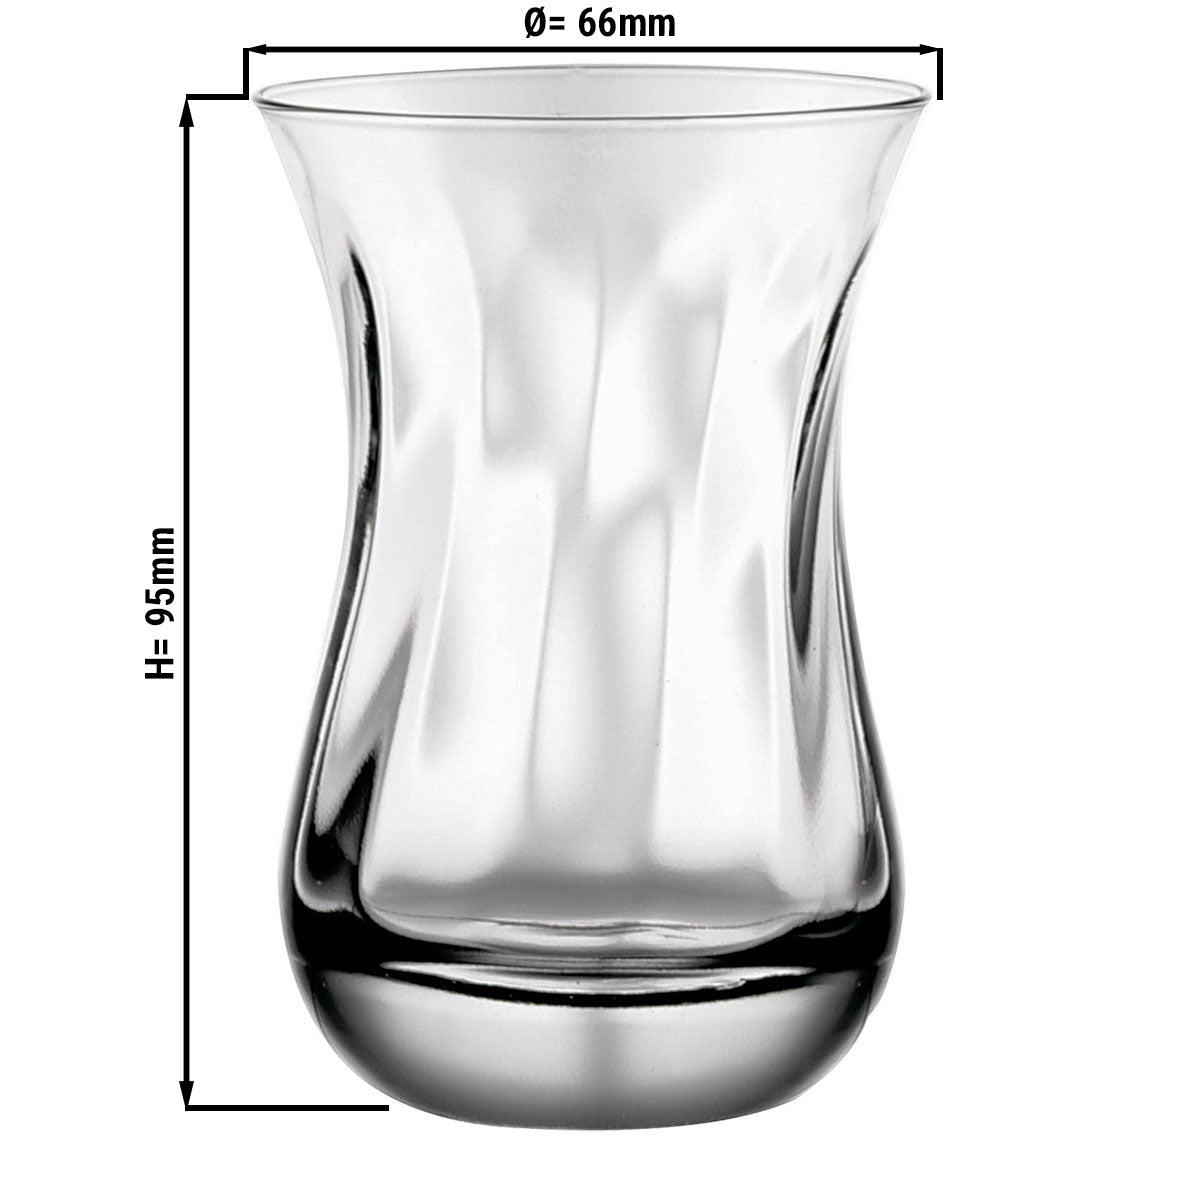 IZMIR teglass med struktur - 0,16 liter - sett på 6 stk.